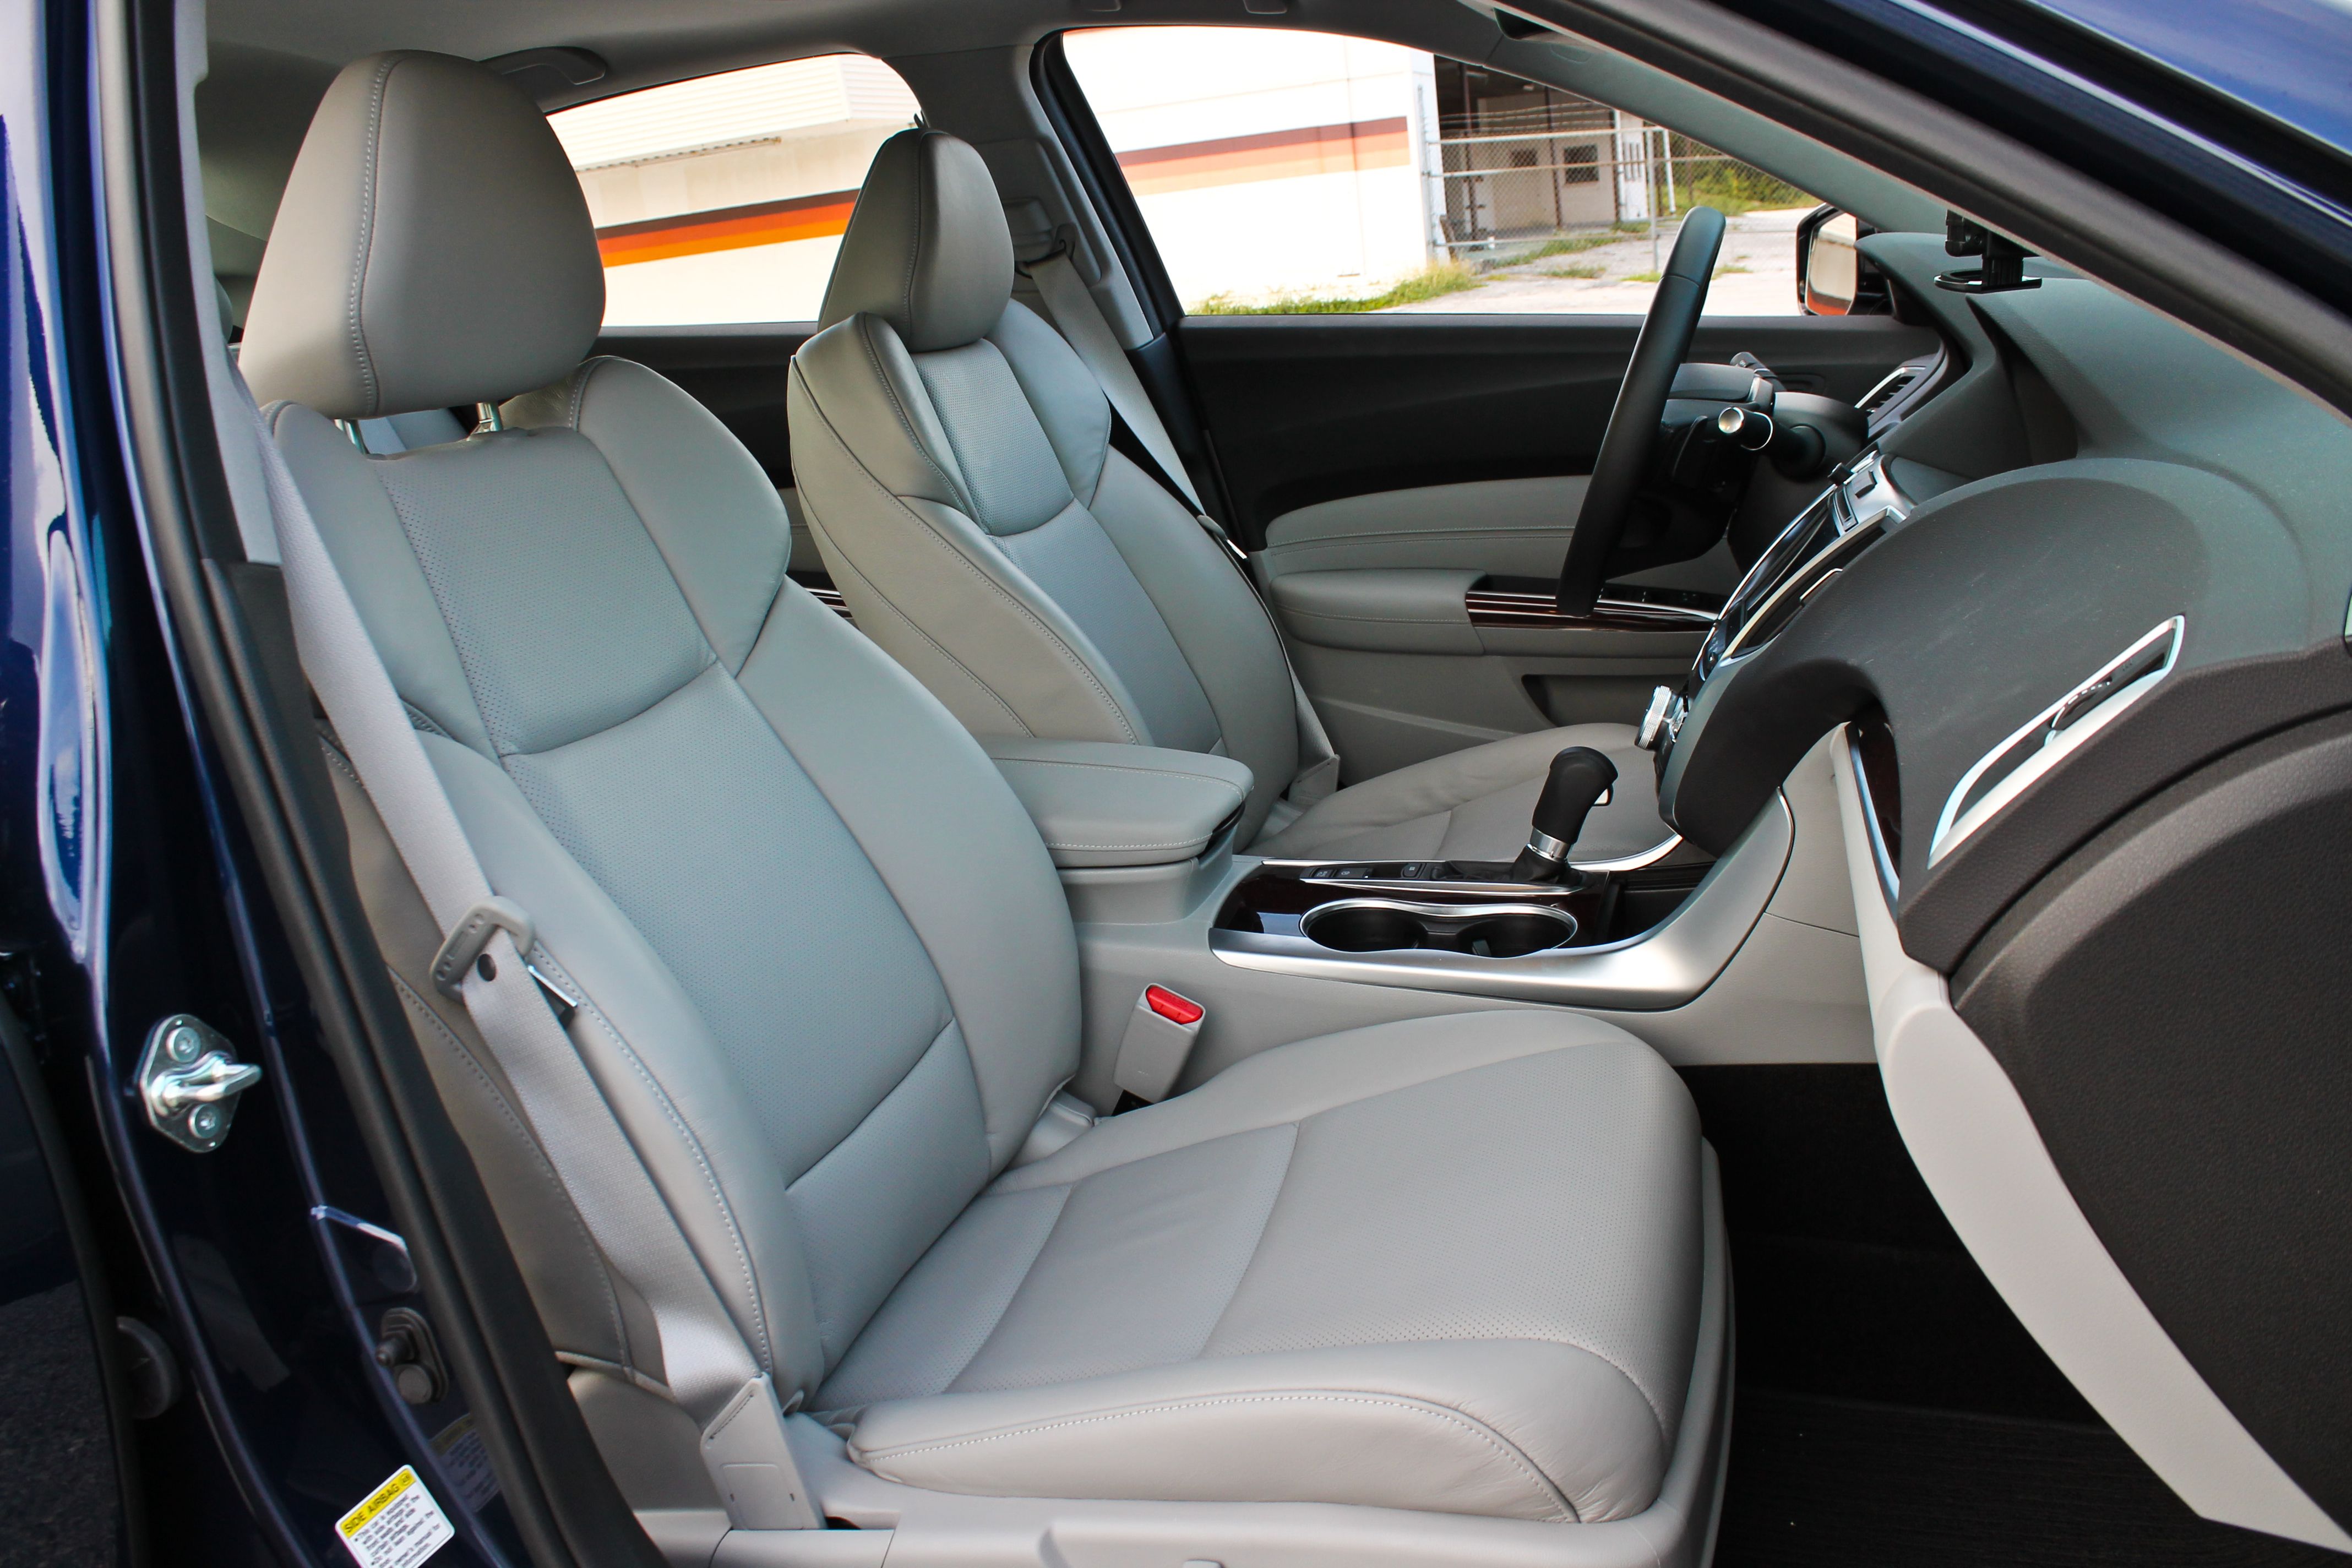 2015 Acura TLX - Driven